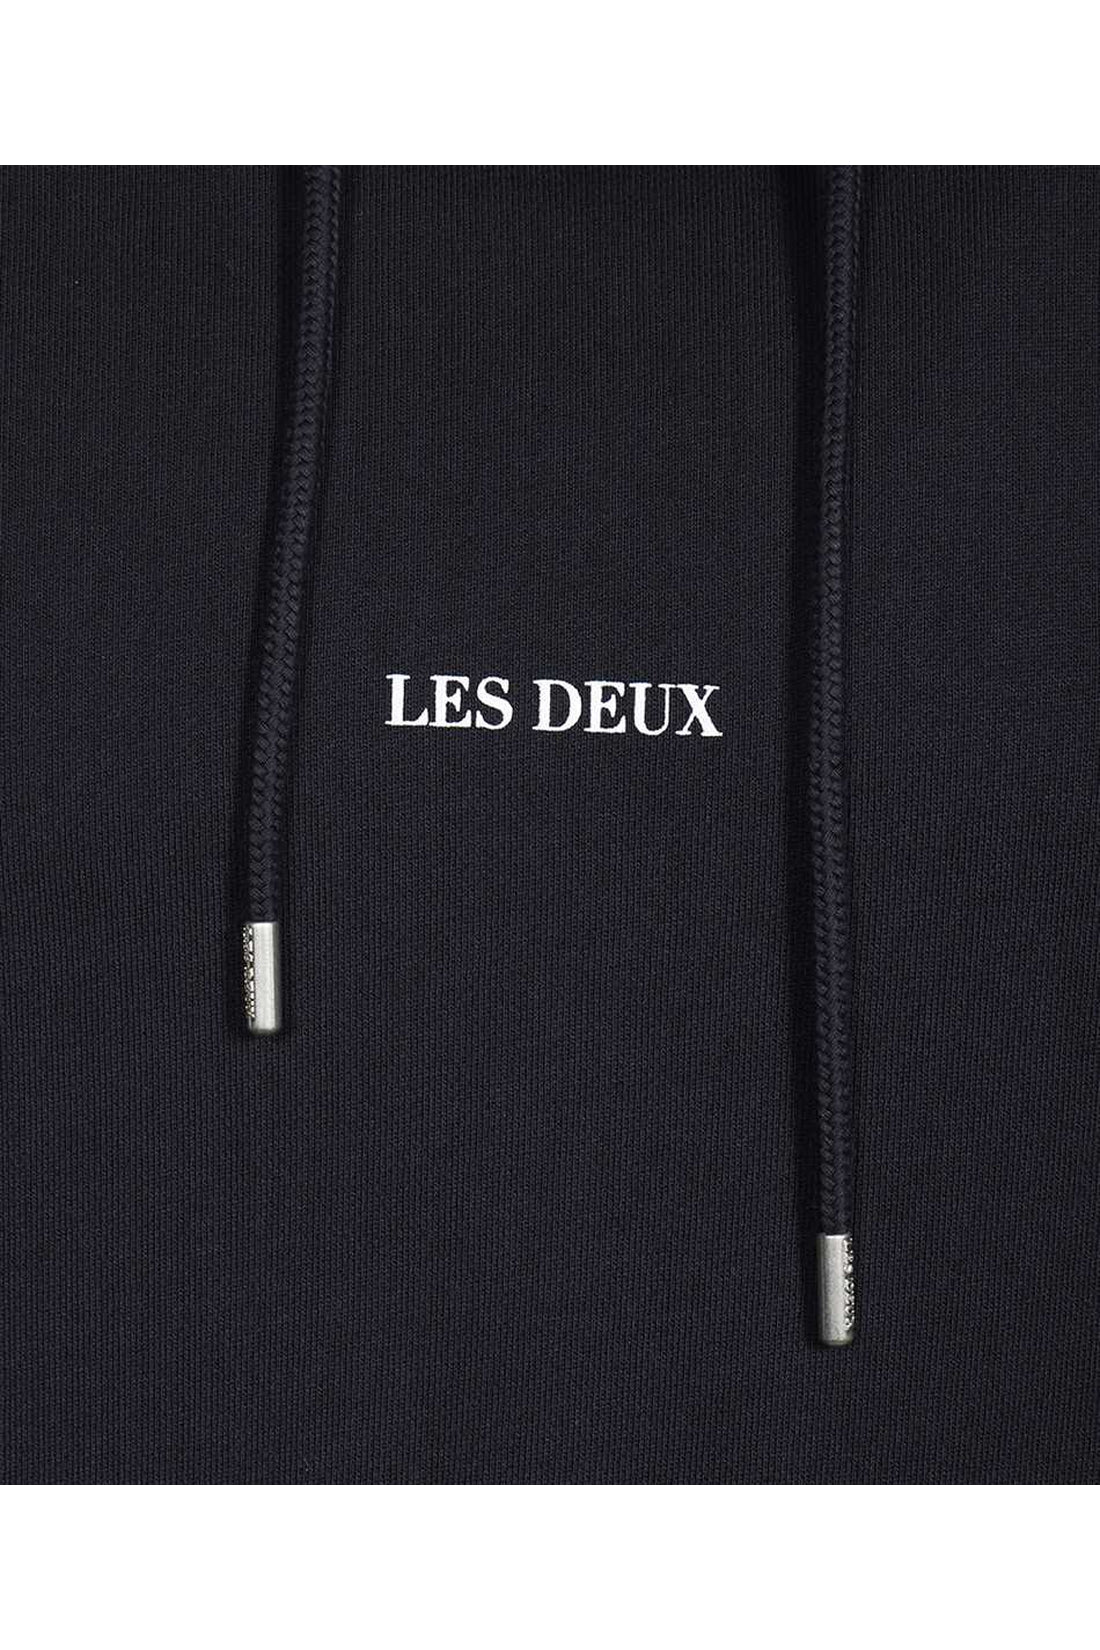 Les Deux-OUTLET-SALE-Lens hooded sweatshirt-ARCHIVIST